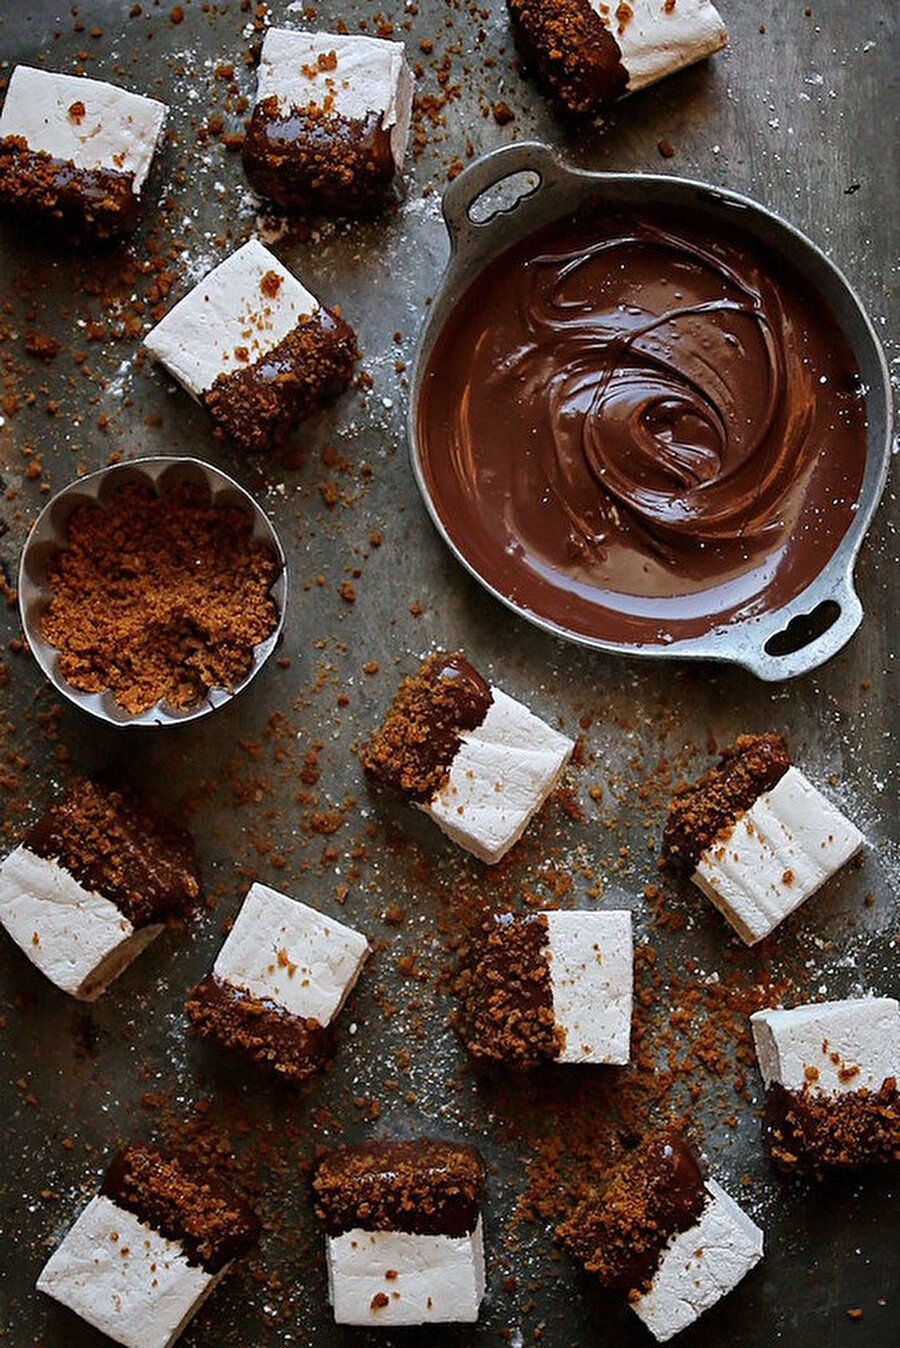 Çikolata soslu marshmallows

                                    
                                    
                                    
                                    
                                    
                                    
                                    
                                    
                                    
                                    
                                    Hem çocukları hem yetişkinleri çıldırtacak lezzet, marshmallow ve çikolata şöleni.
                                
                                
                                
                                
                                
                                
                                
                                
                                
                                
                                